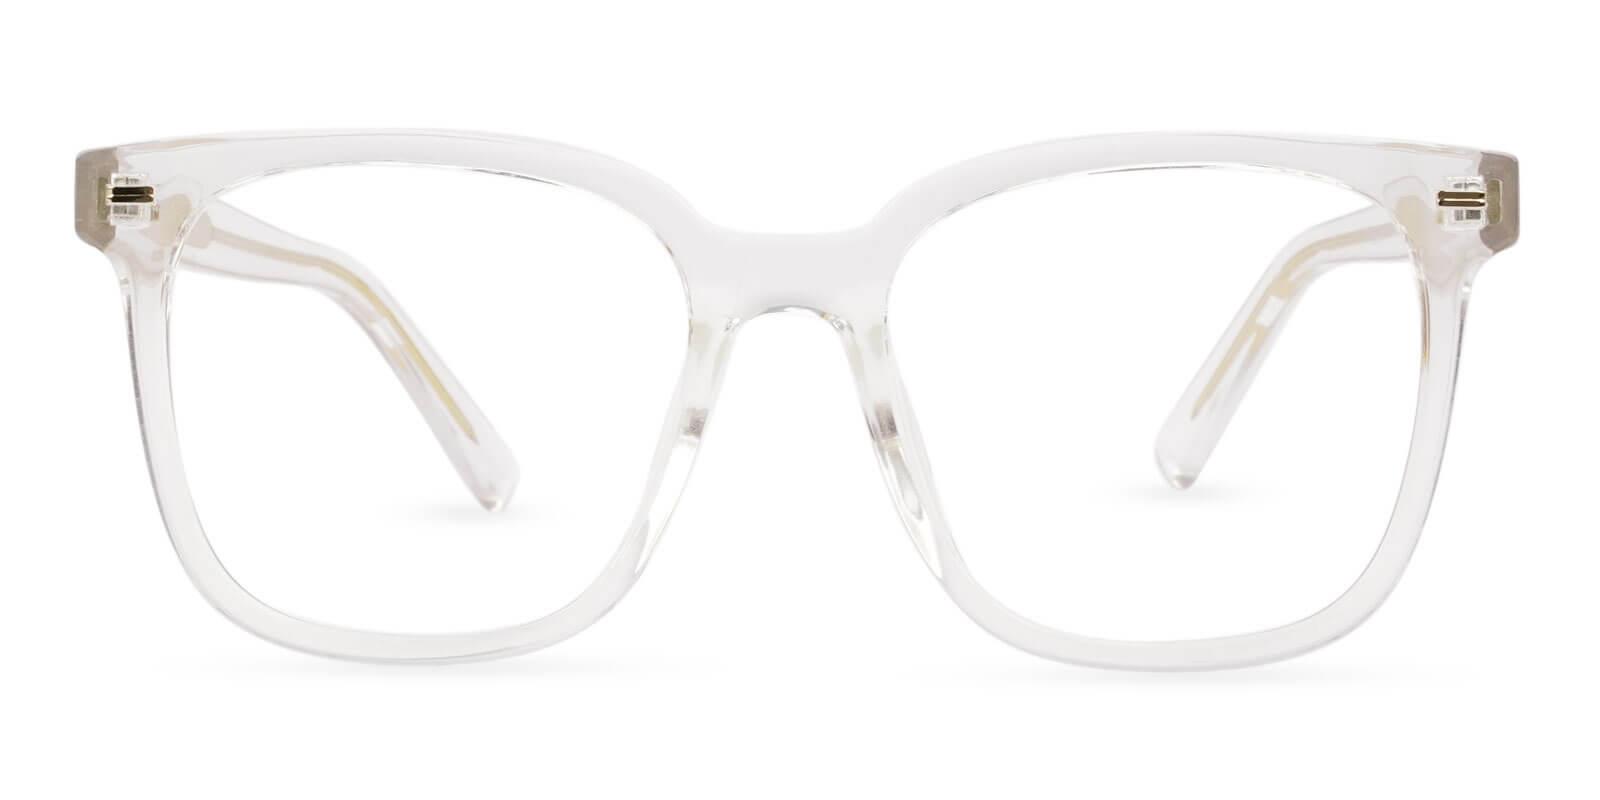 Wings Translucent  Eyeglasses , UniversalBridgeFit Frames from ABBE Glasses